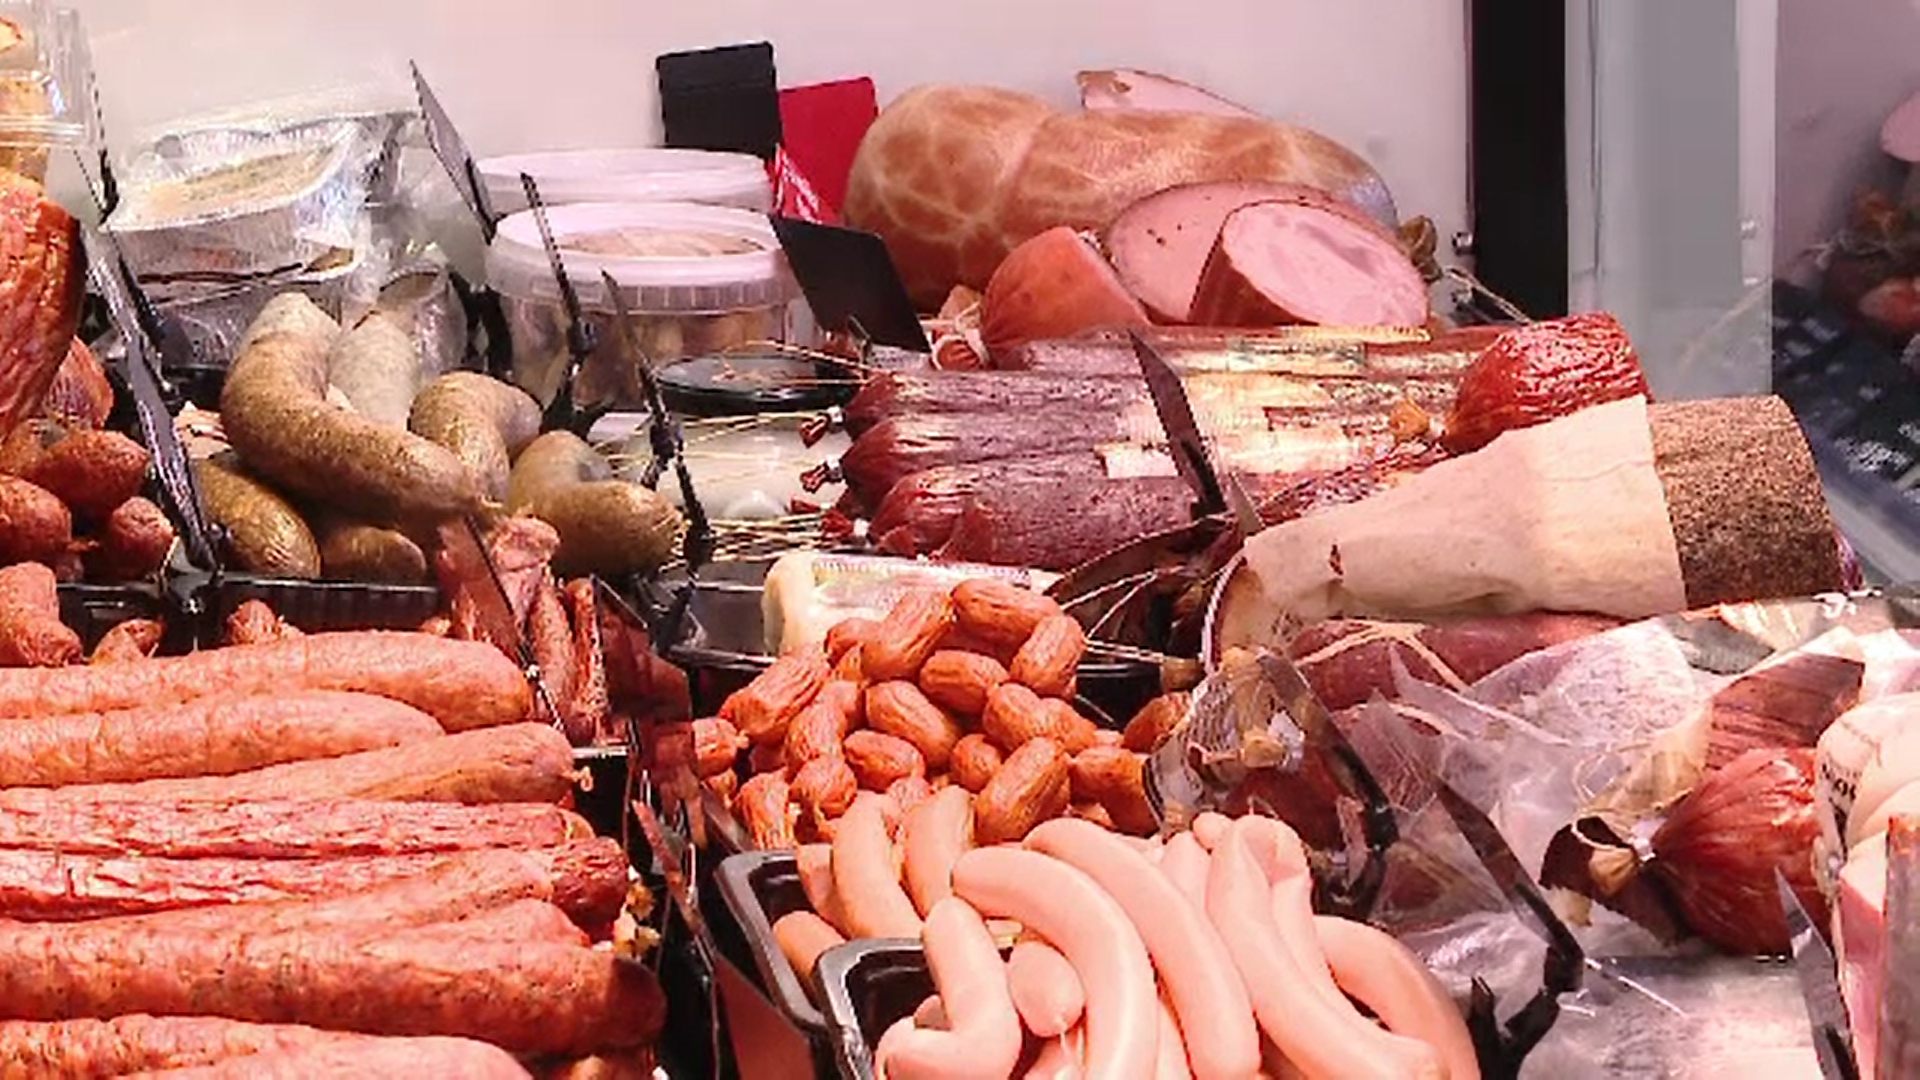 Ce e mai periculos, branza sau carnea de porc? Raspunsul e surprinzator